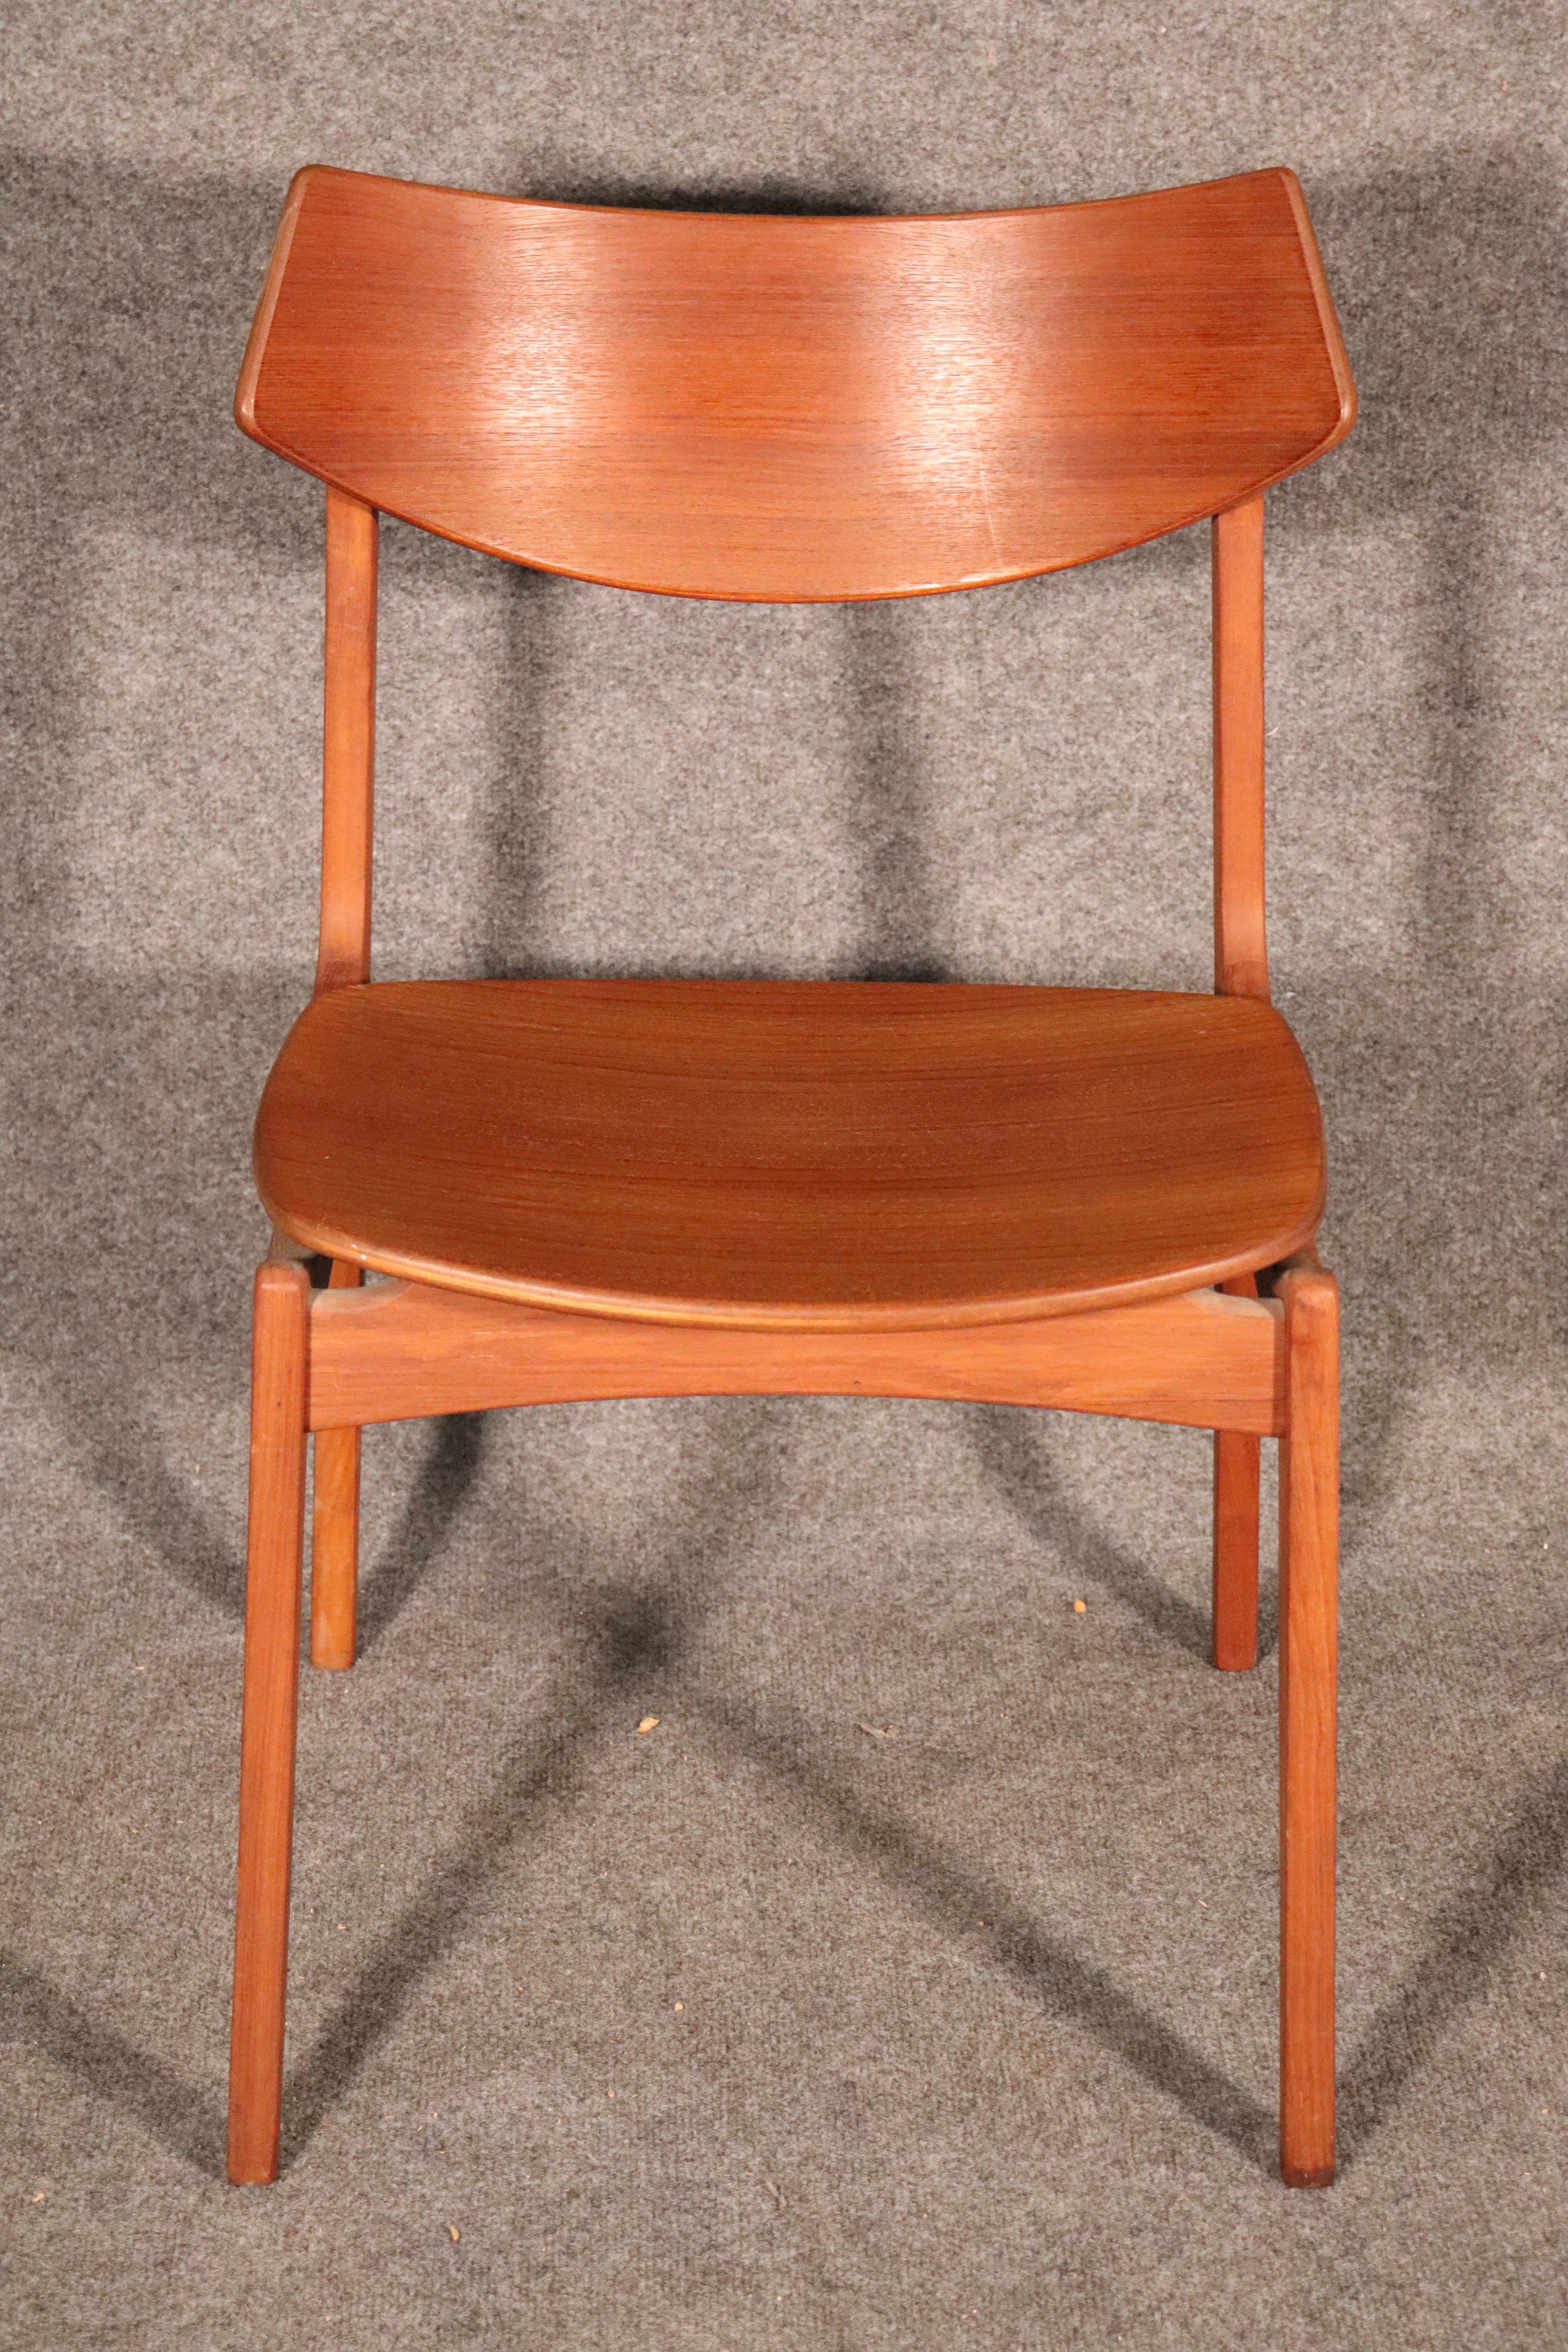 Dänischer Einzelstuhl mit geschwungener Rückenlehne und schwebendem Sitz. Tolles Mid-Century-Design für zu Hause oder im Büro.
Bitte bestätigen Sie den Standort.